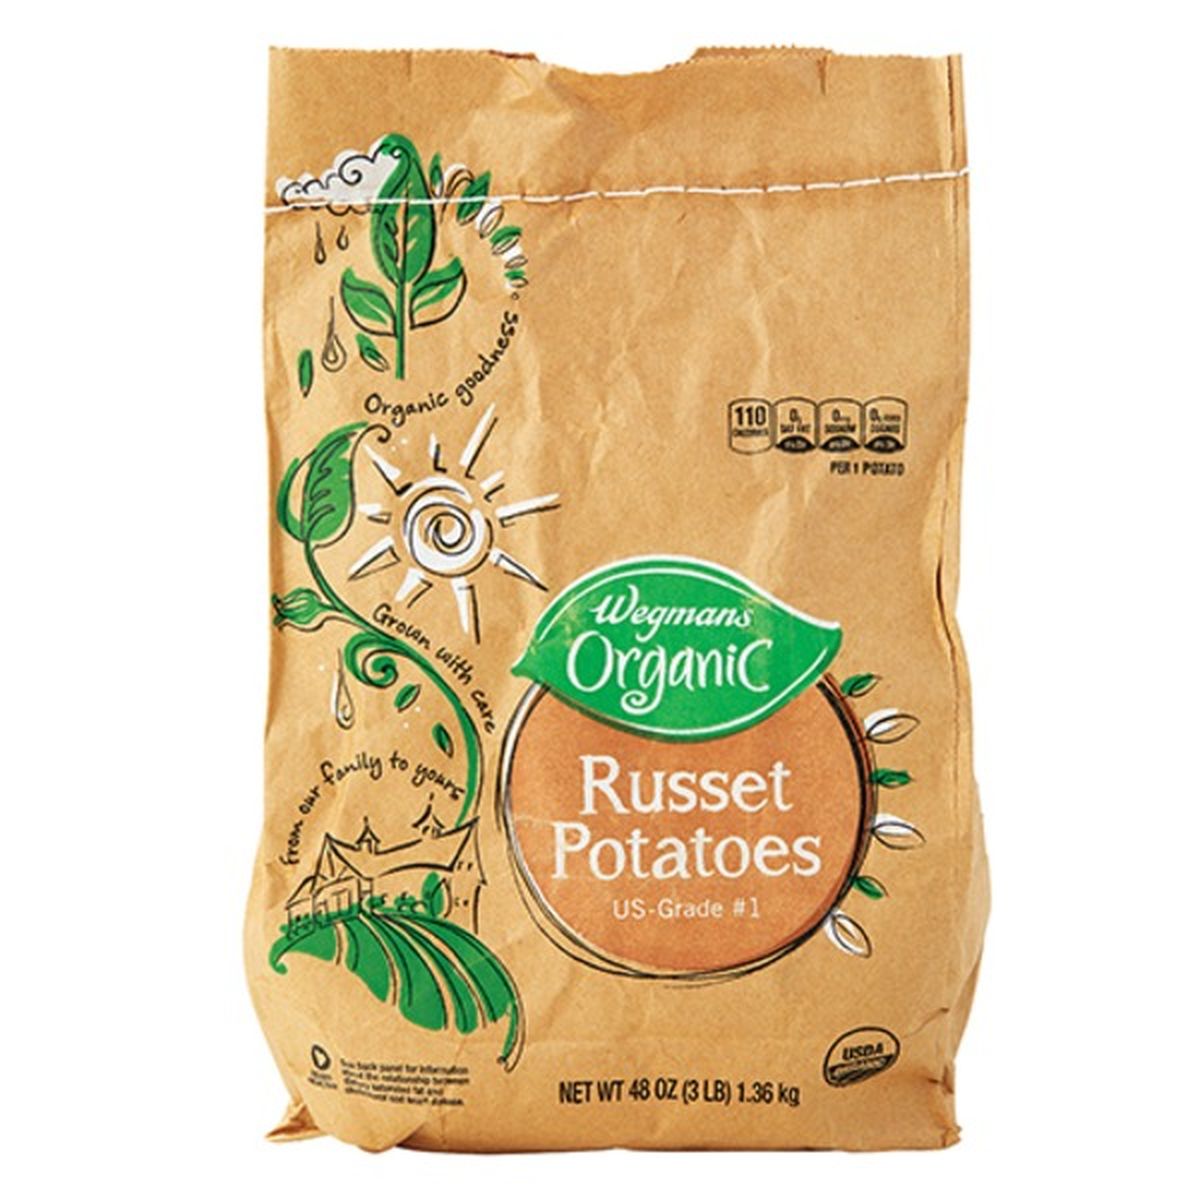 Calories in Organic Russet Potatoes